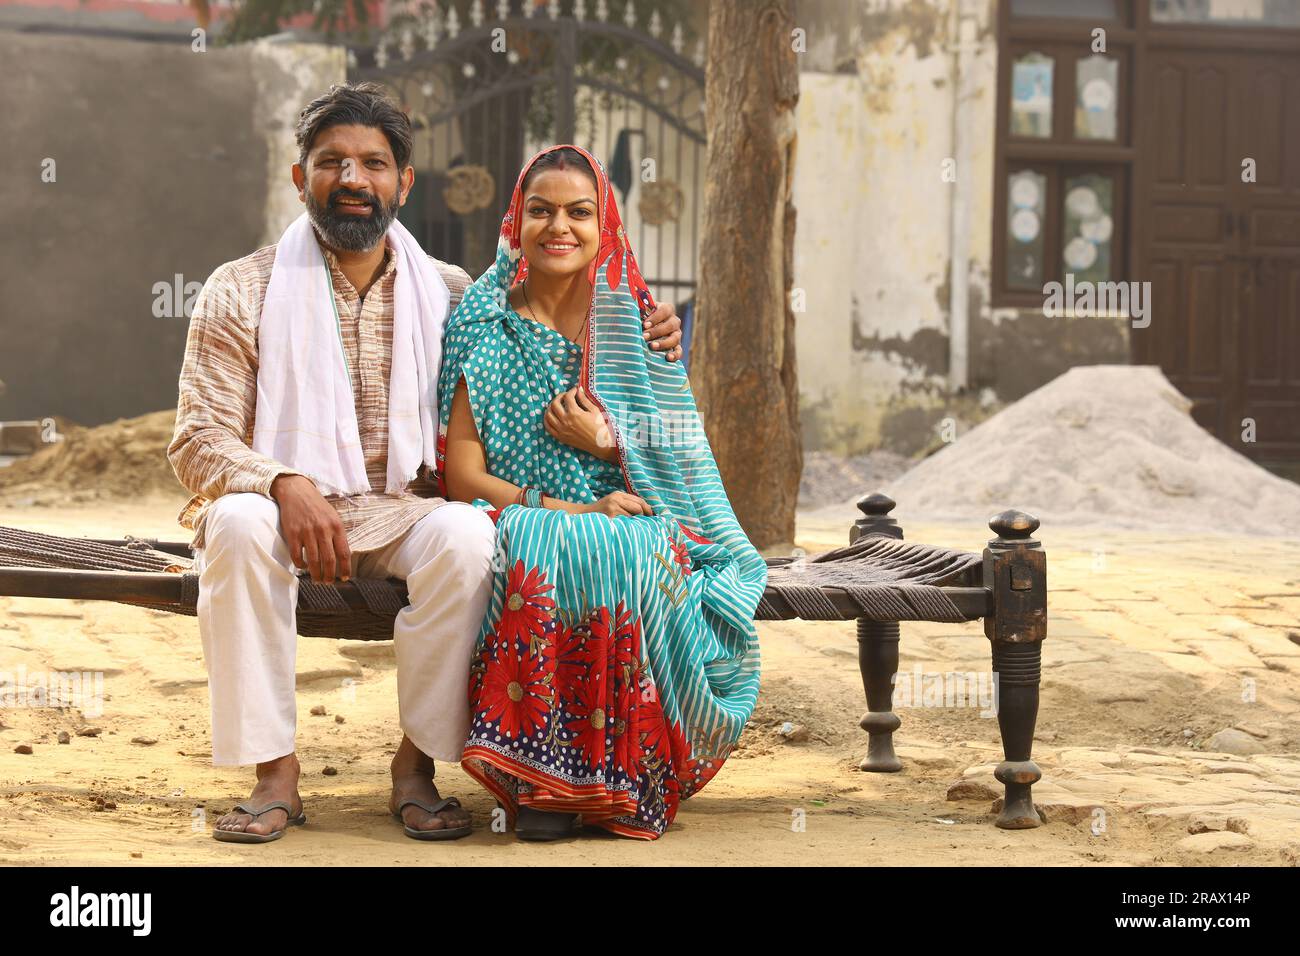 Uomo anziano seduto in ambiente rurale con indosso kurta-pigiama che è un abito tradizionale per gli uomini nel nord dell'India di giorno con sua moglie. Foto Stock